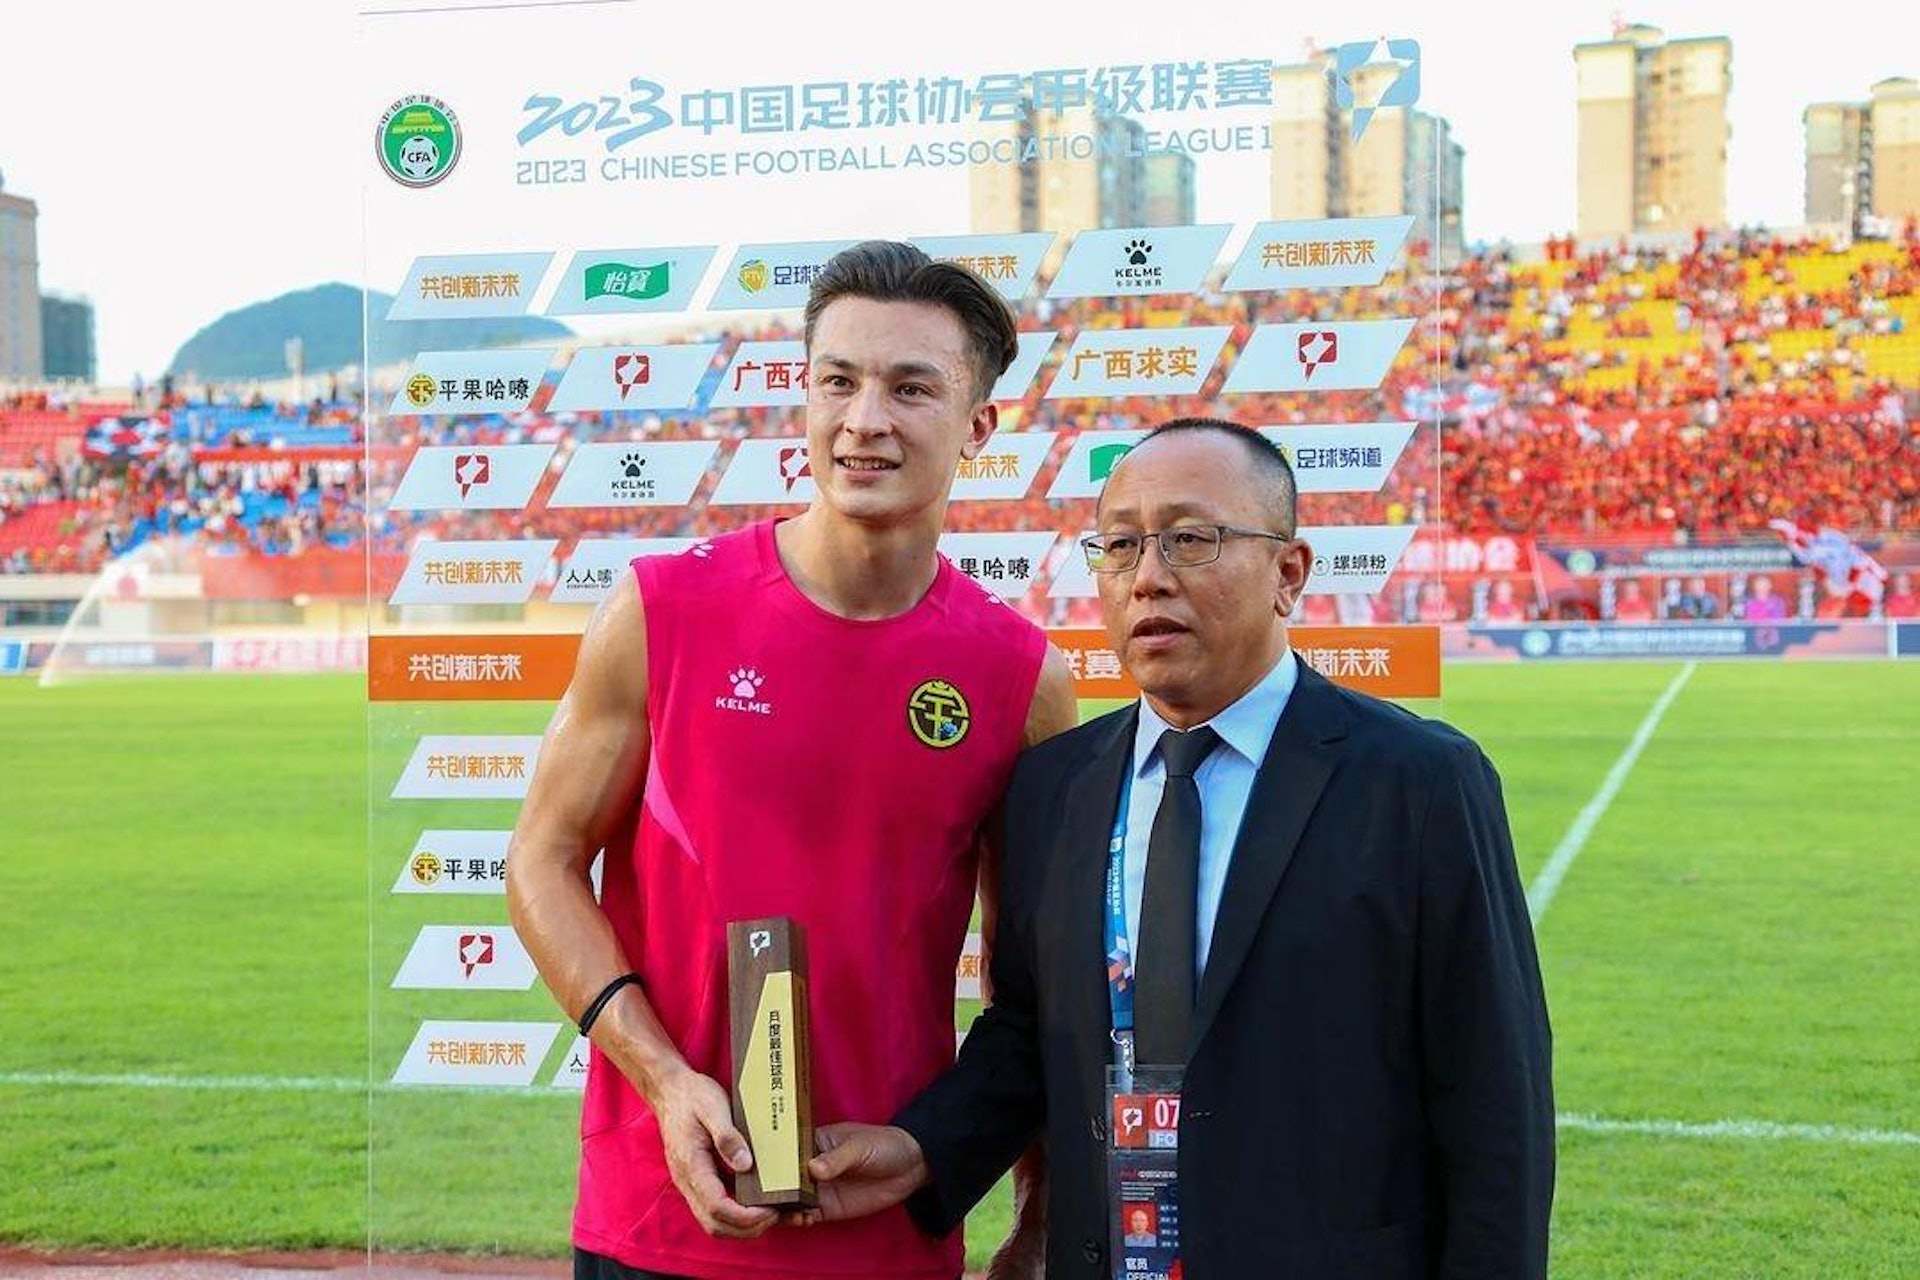 Matt Orr (left) has been recognised for his displays last season. Photo: Weibo/@安永佳MatthewOrr